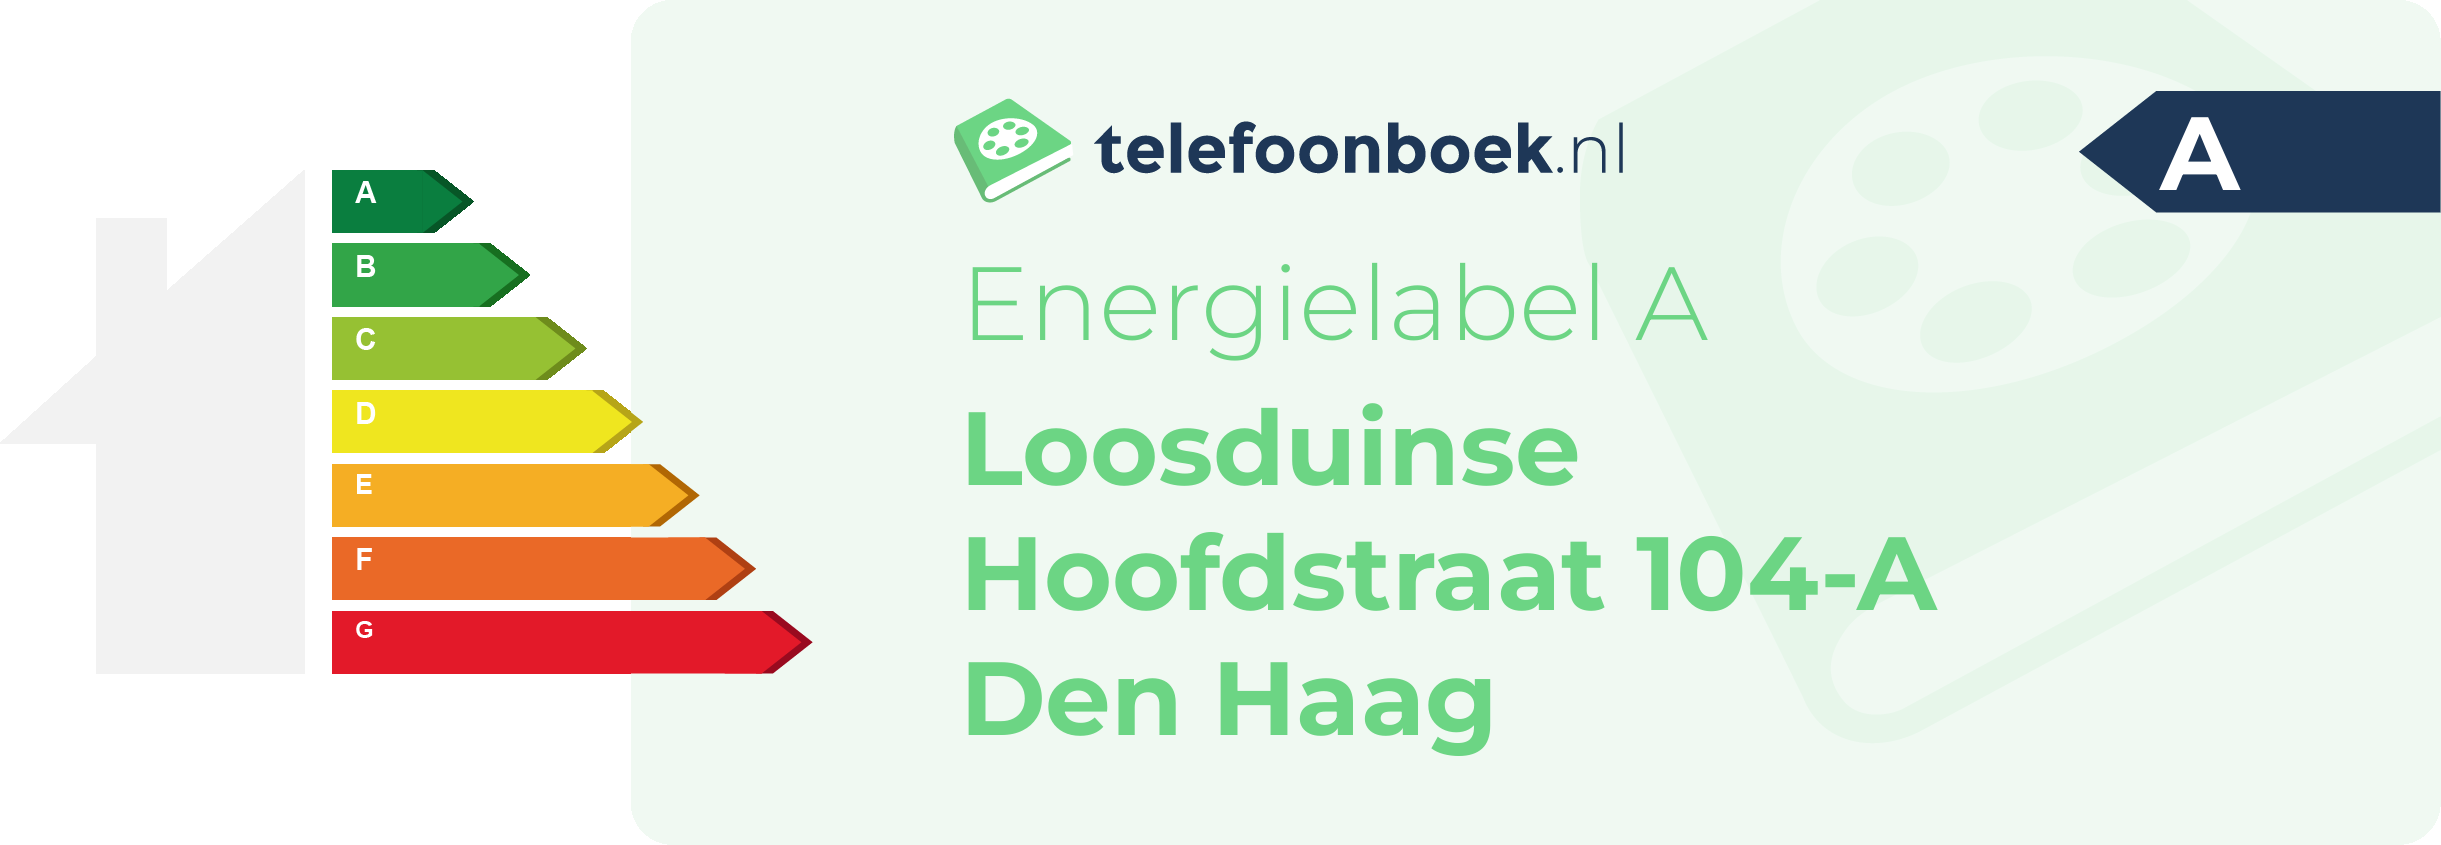 Energielabel Loosduinse Hoofdstraat 104-A Den Haag